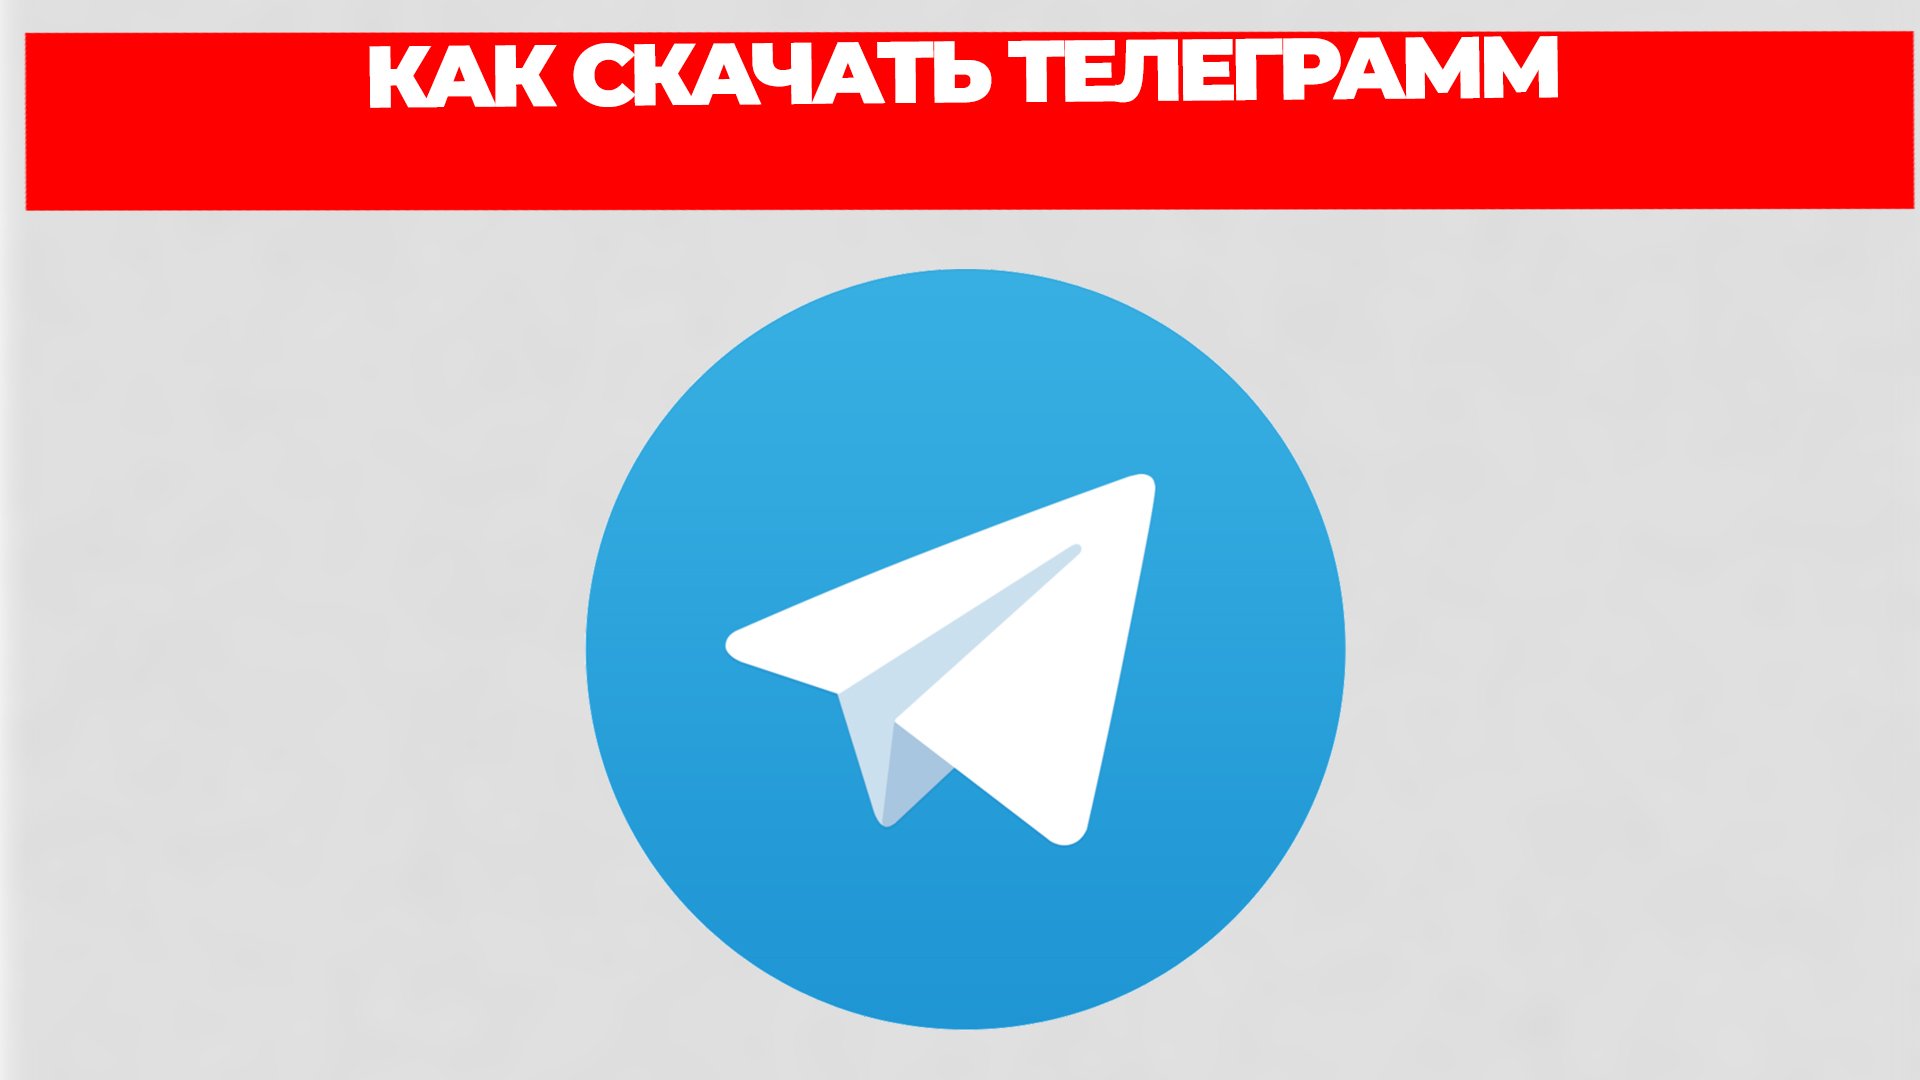 Телеграмм скачать бесплатно на русском на телефон без регистрации и установить фото 49